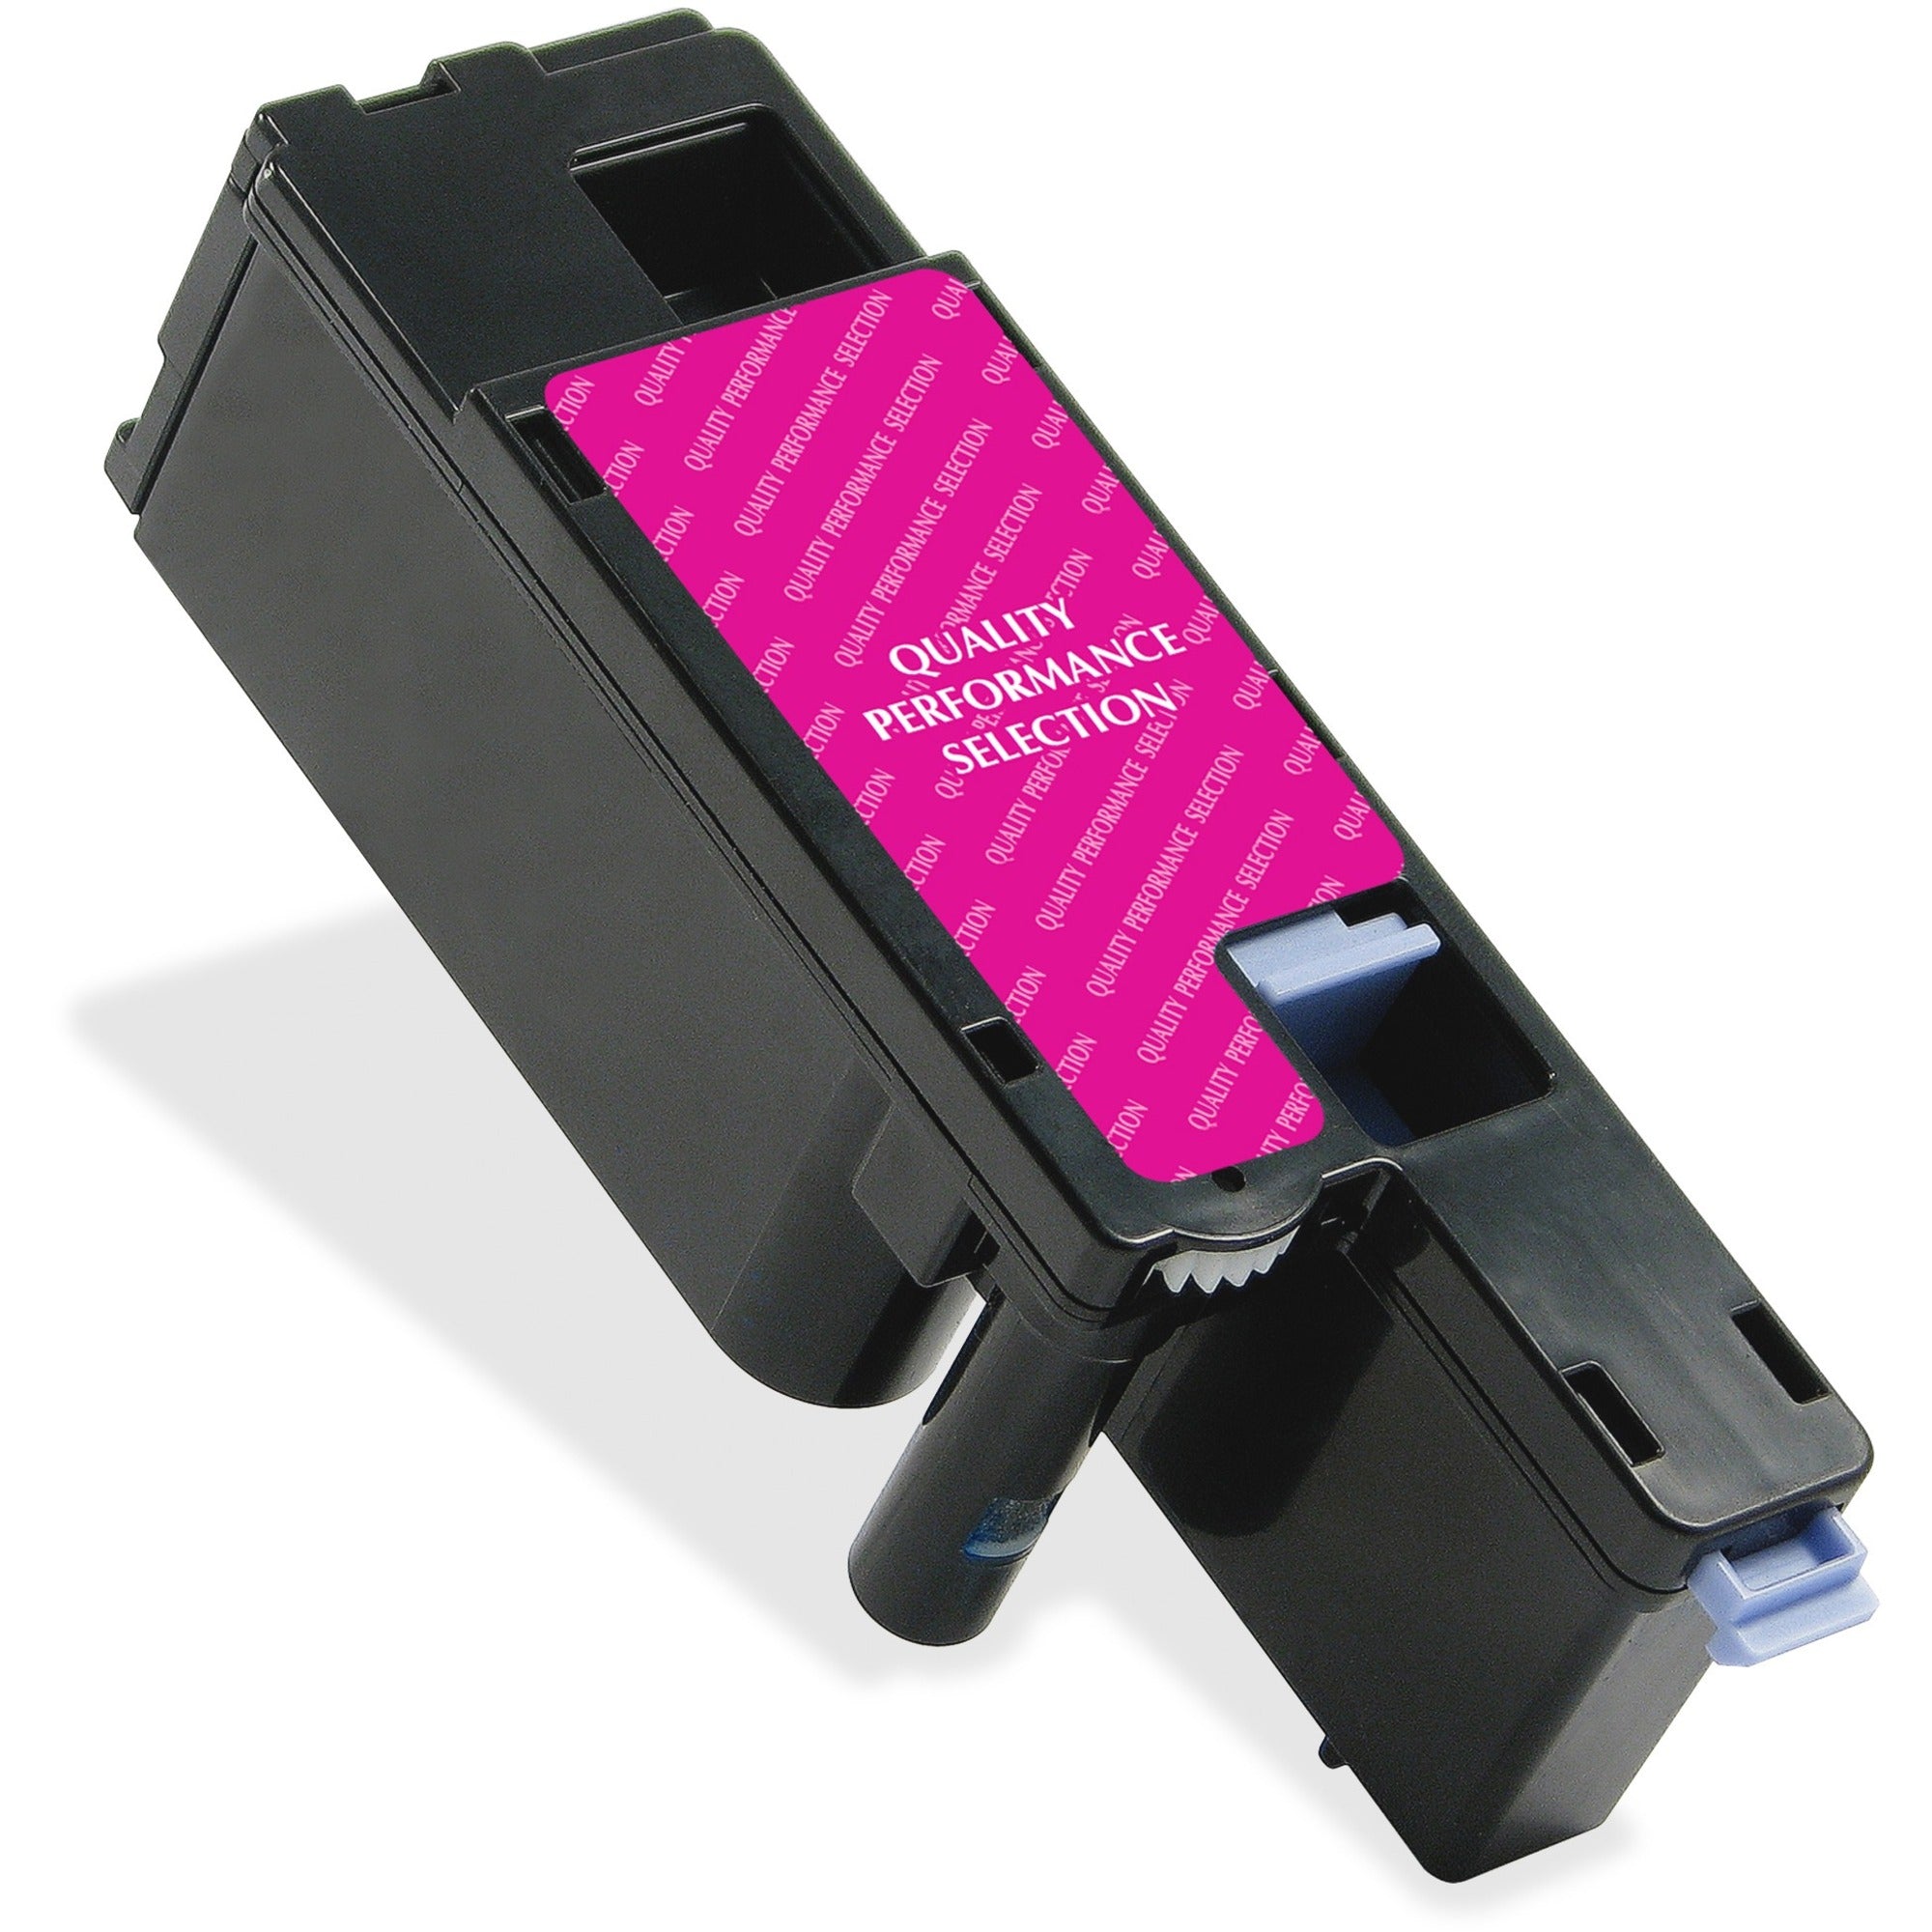 Elite Image Remanufactured Toner Cartridge Alternative For Dell - Laser - 1400 Pages - Magenta - 1 Each - 1